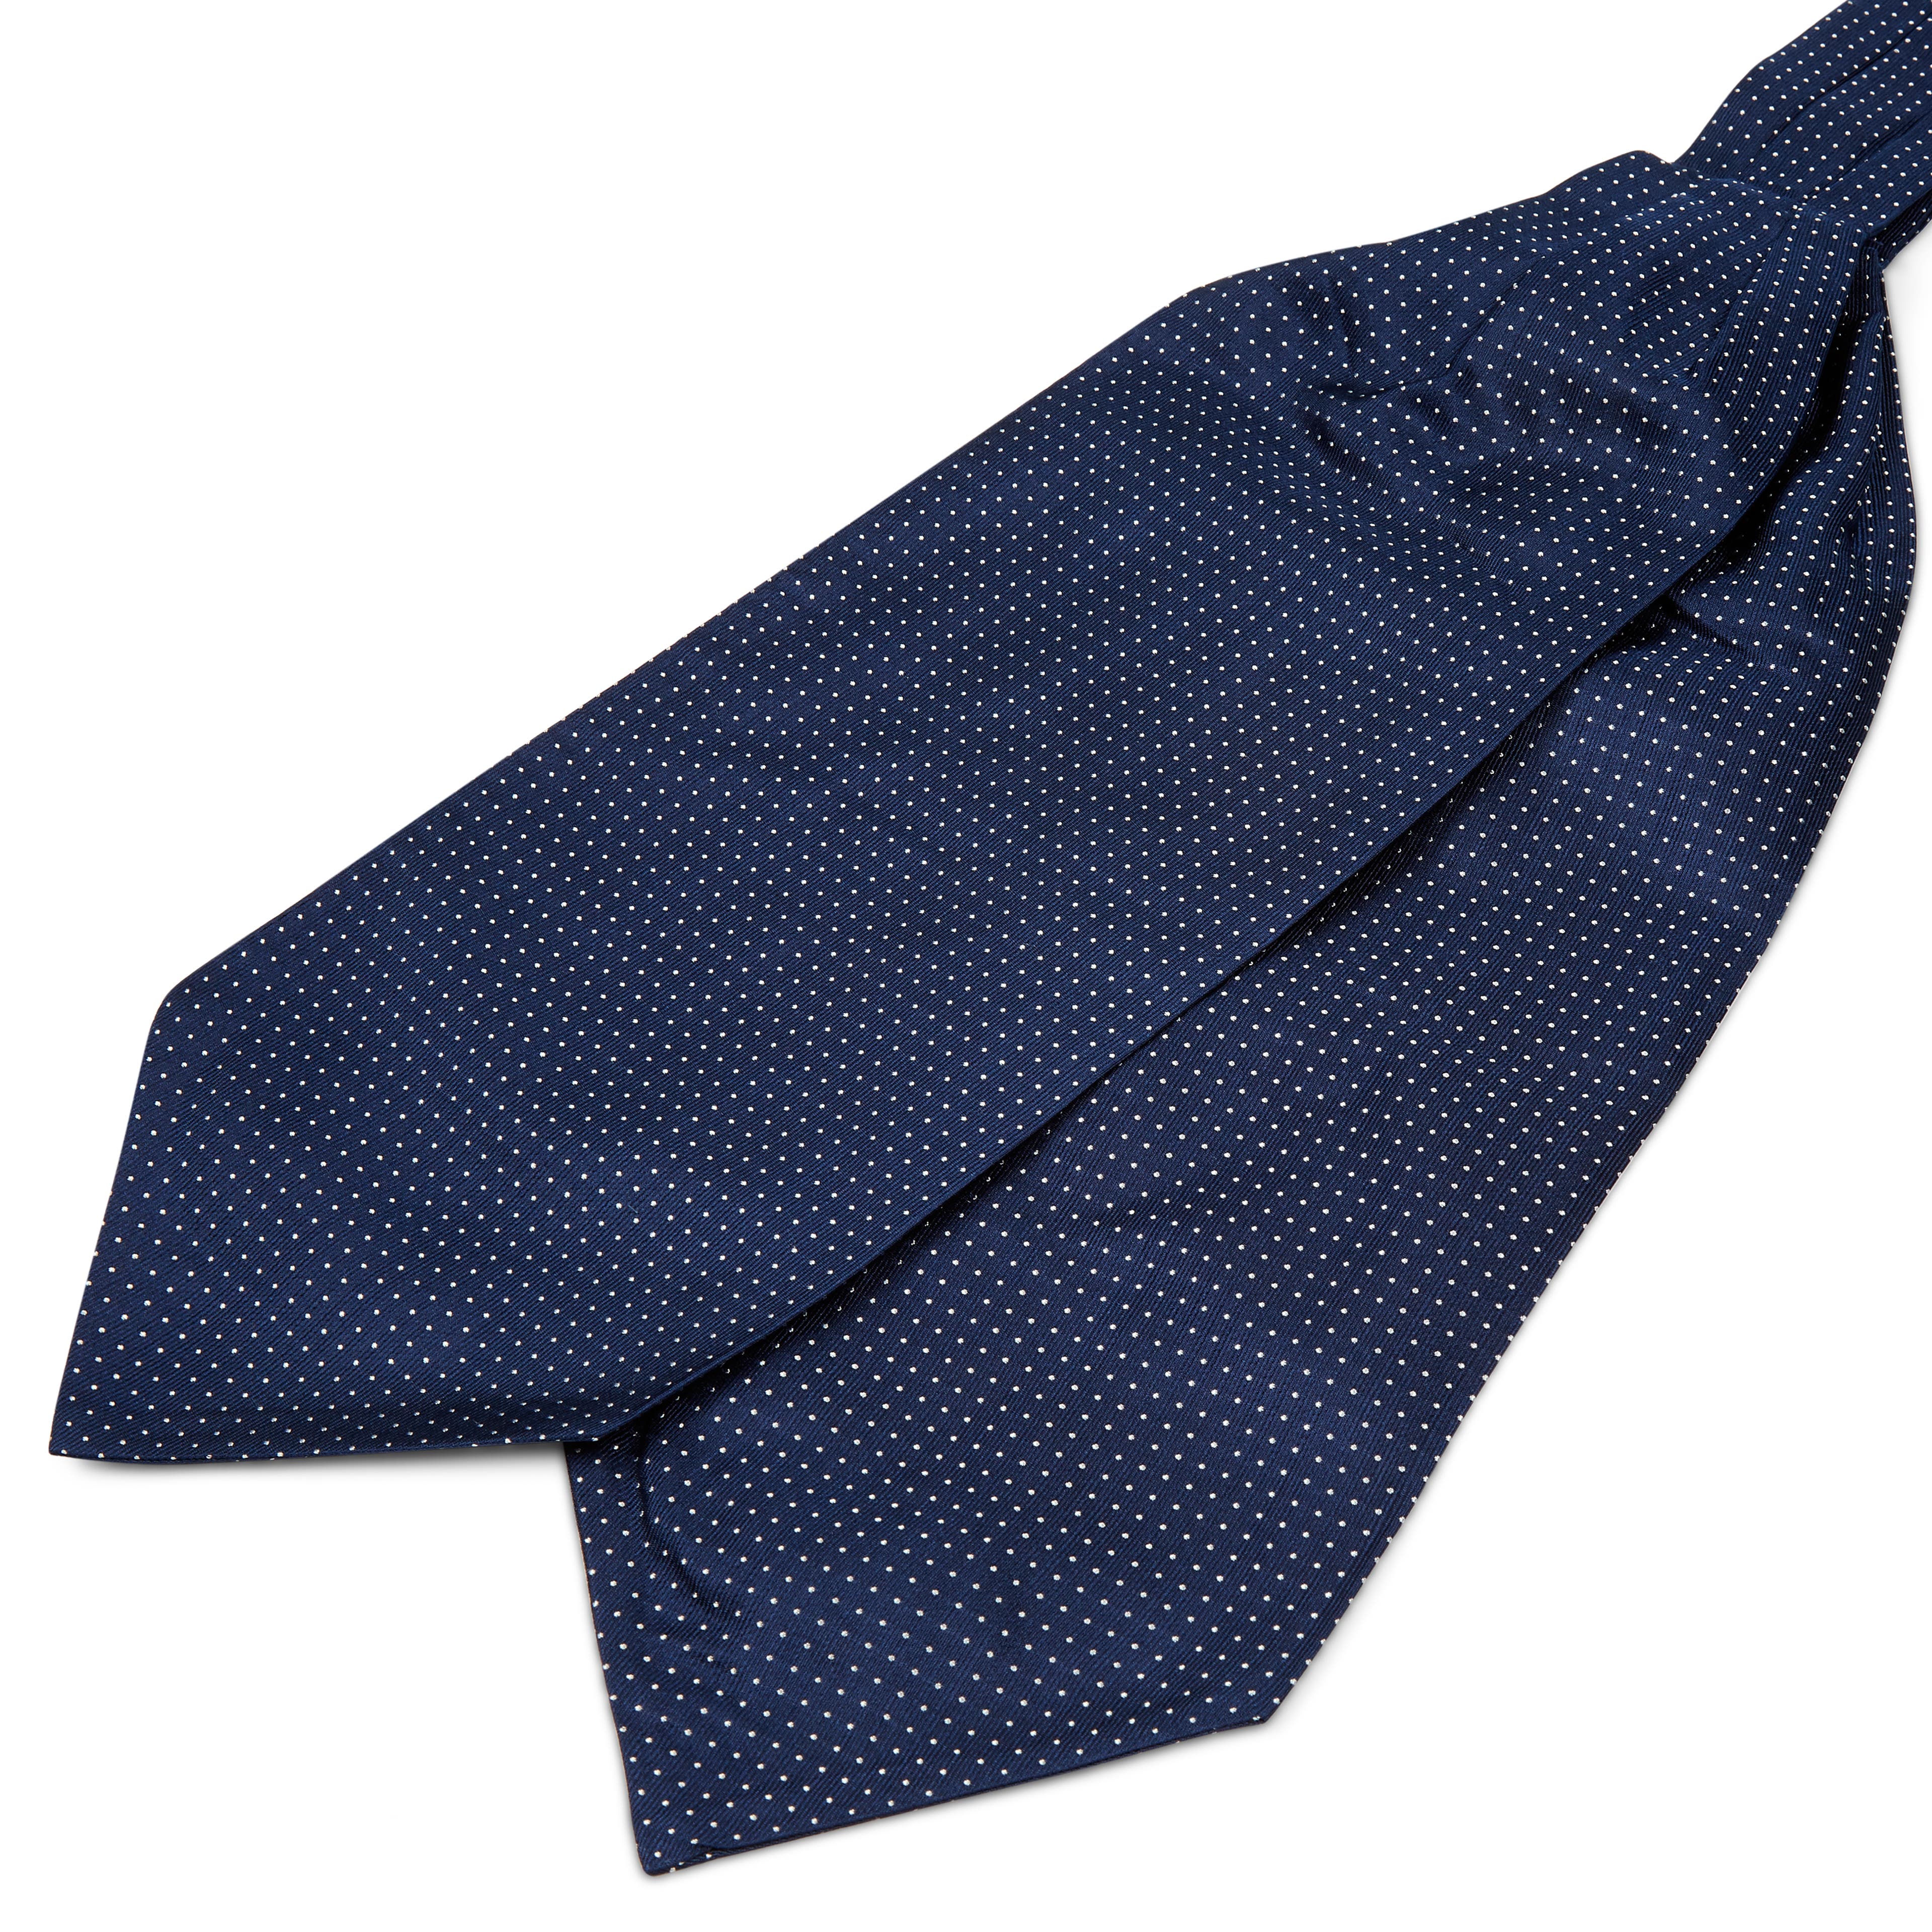 Cravate Ascot en soie bleu marine à pois blancs